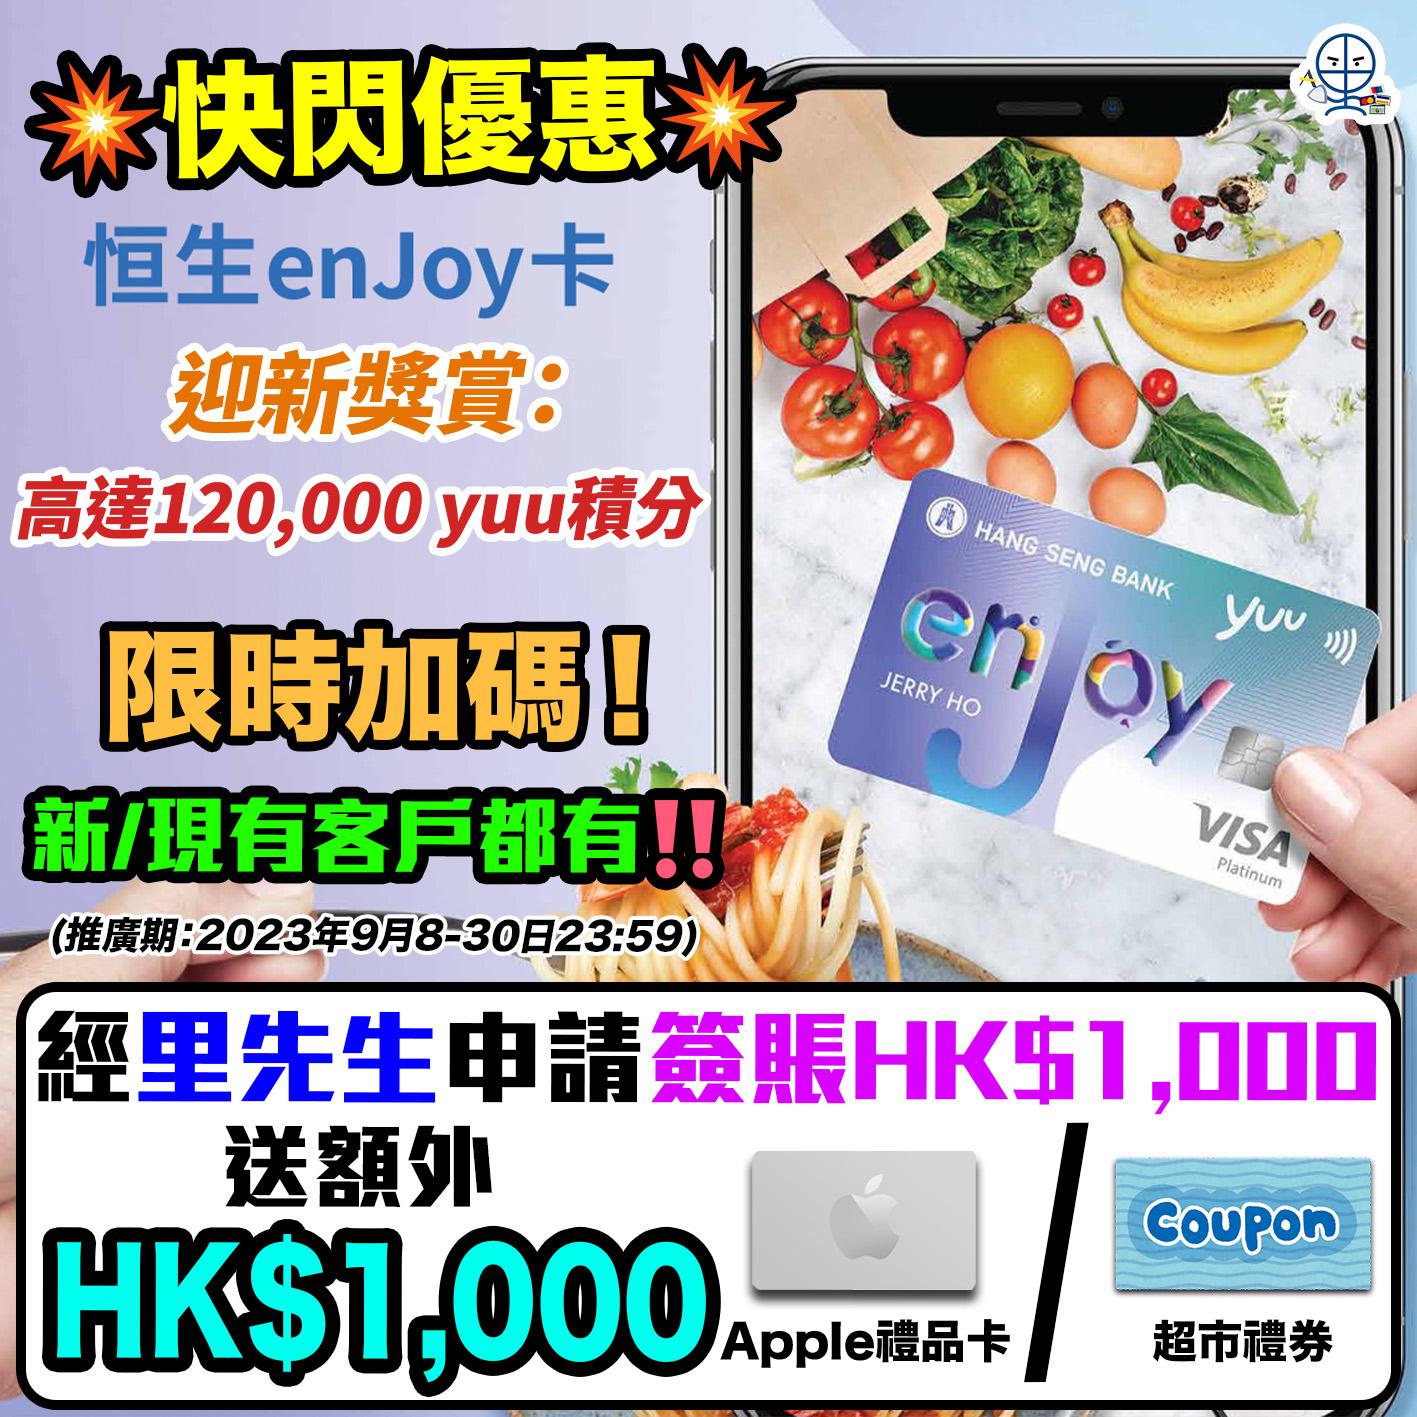 【恒生enJoy卡優惠送HK$1,000】9月限時加碼快閃+升級迎新獎賞總